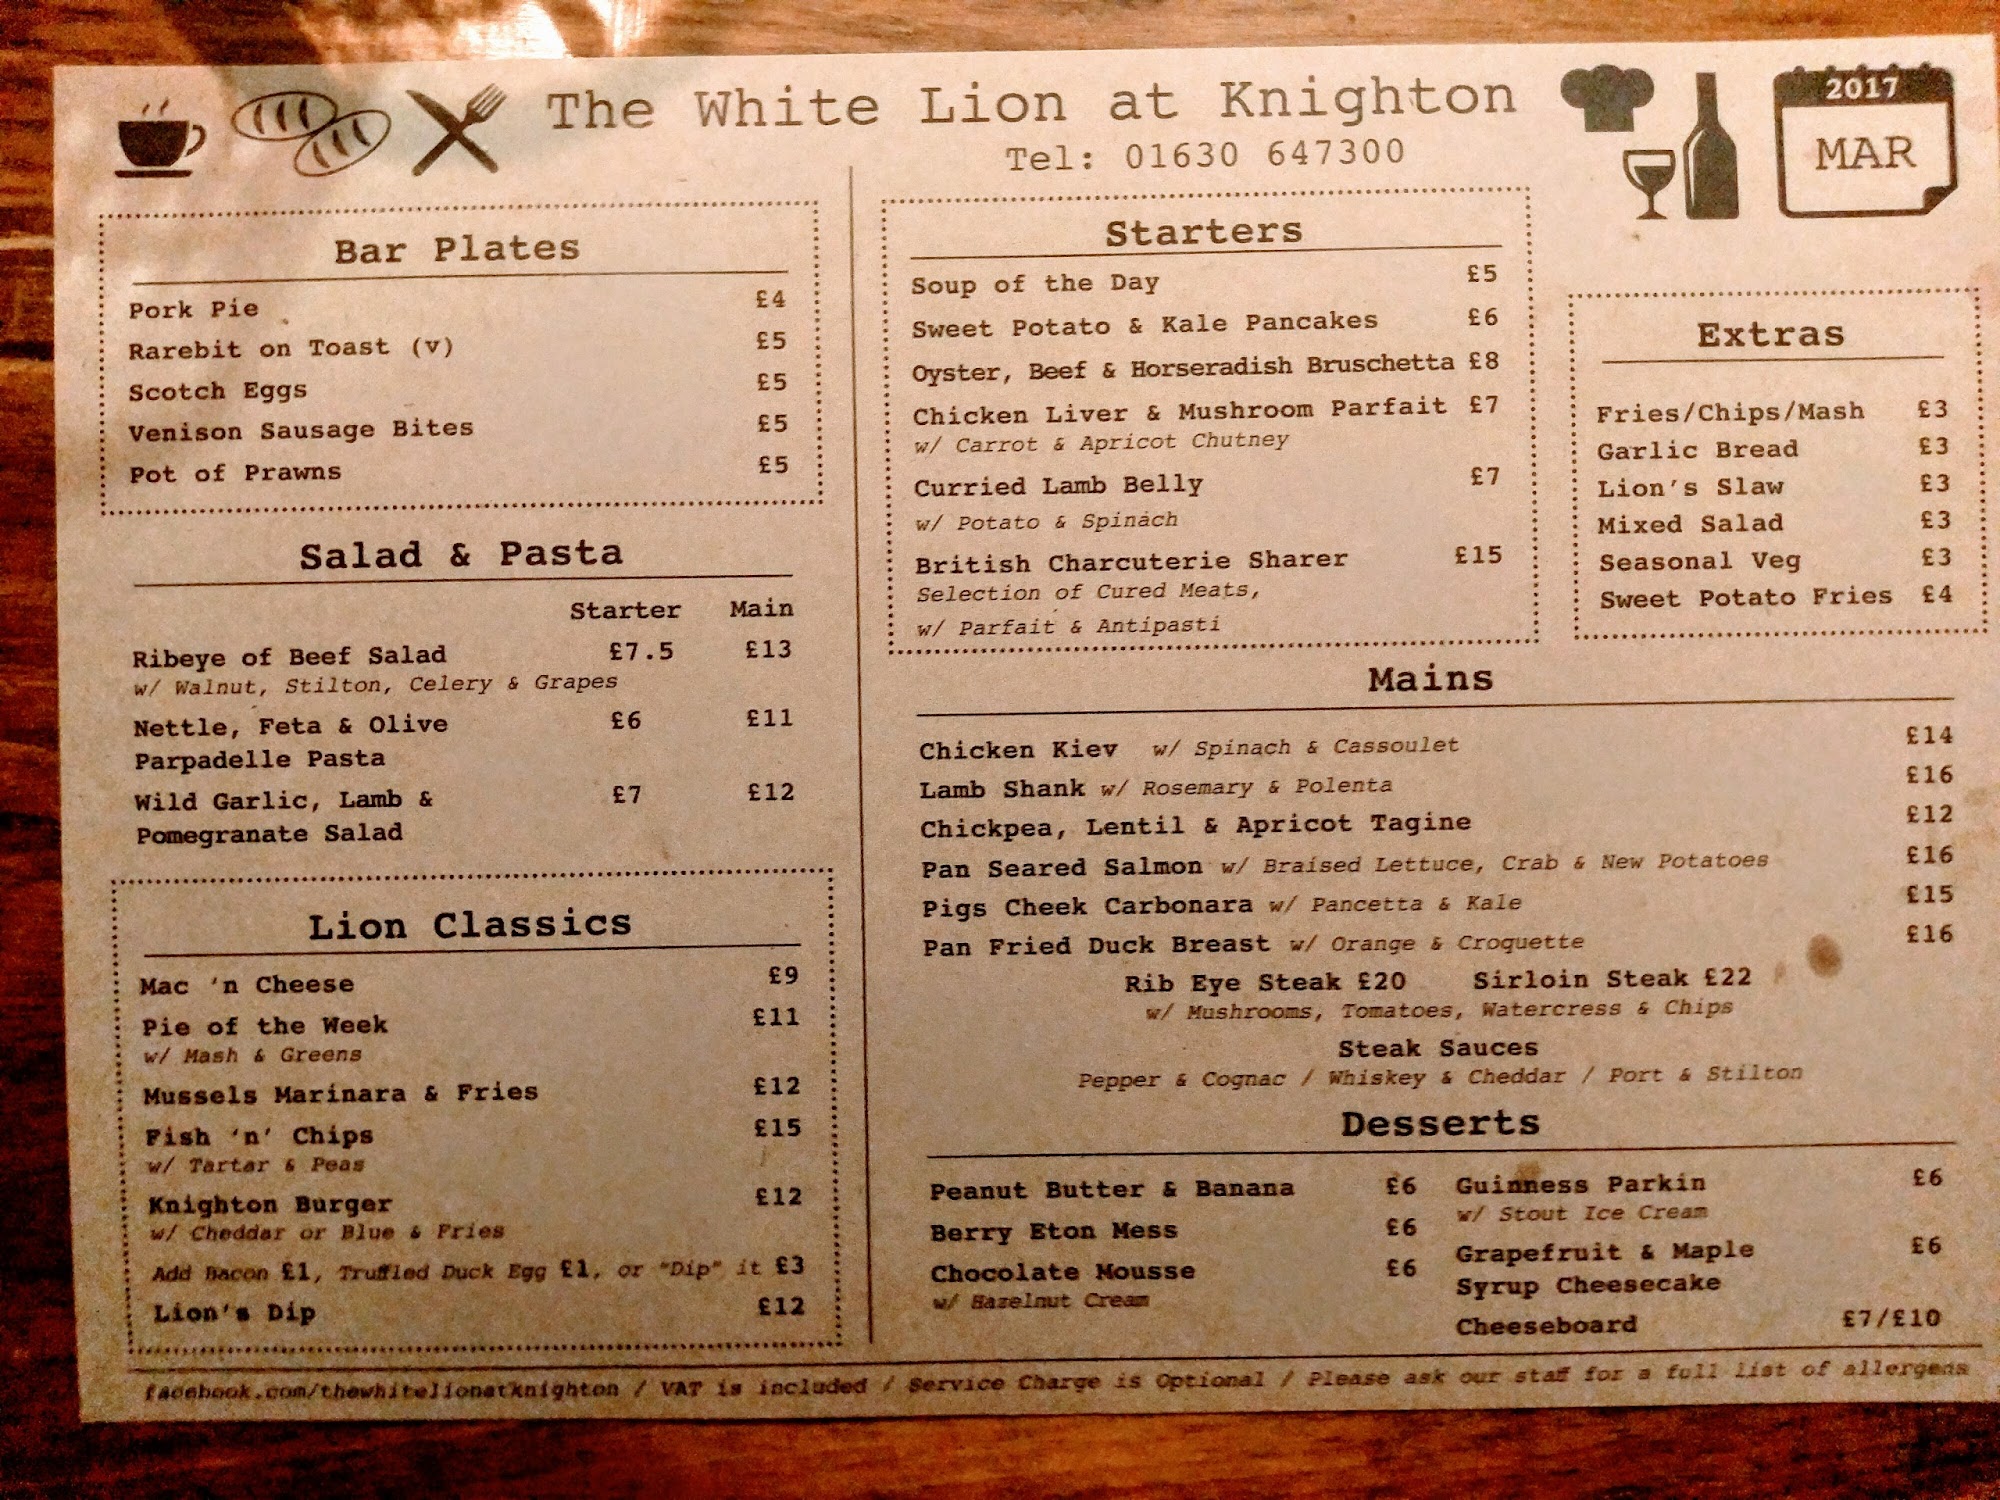 The White Lion at Knighton